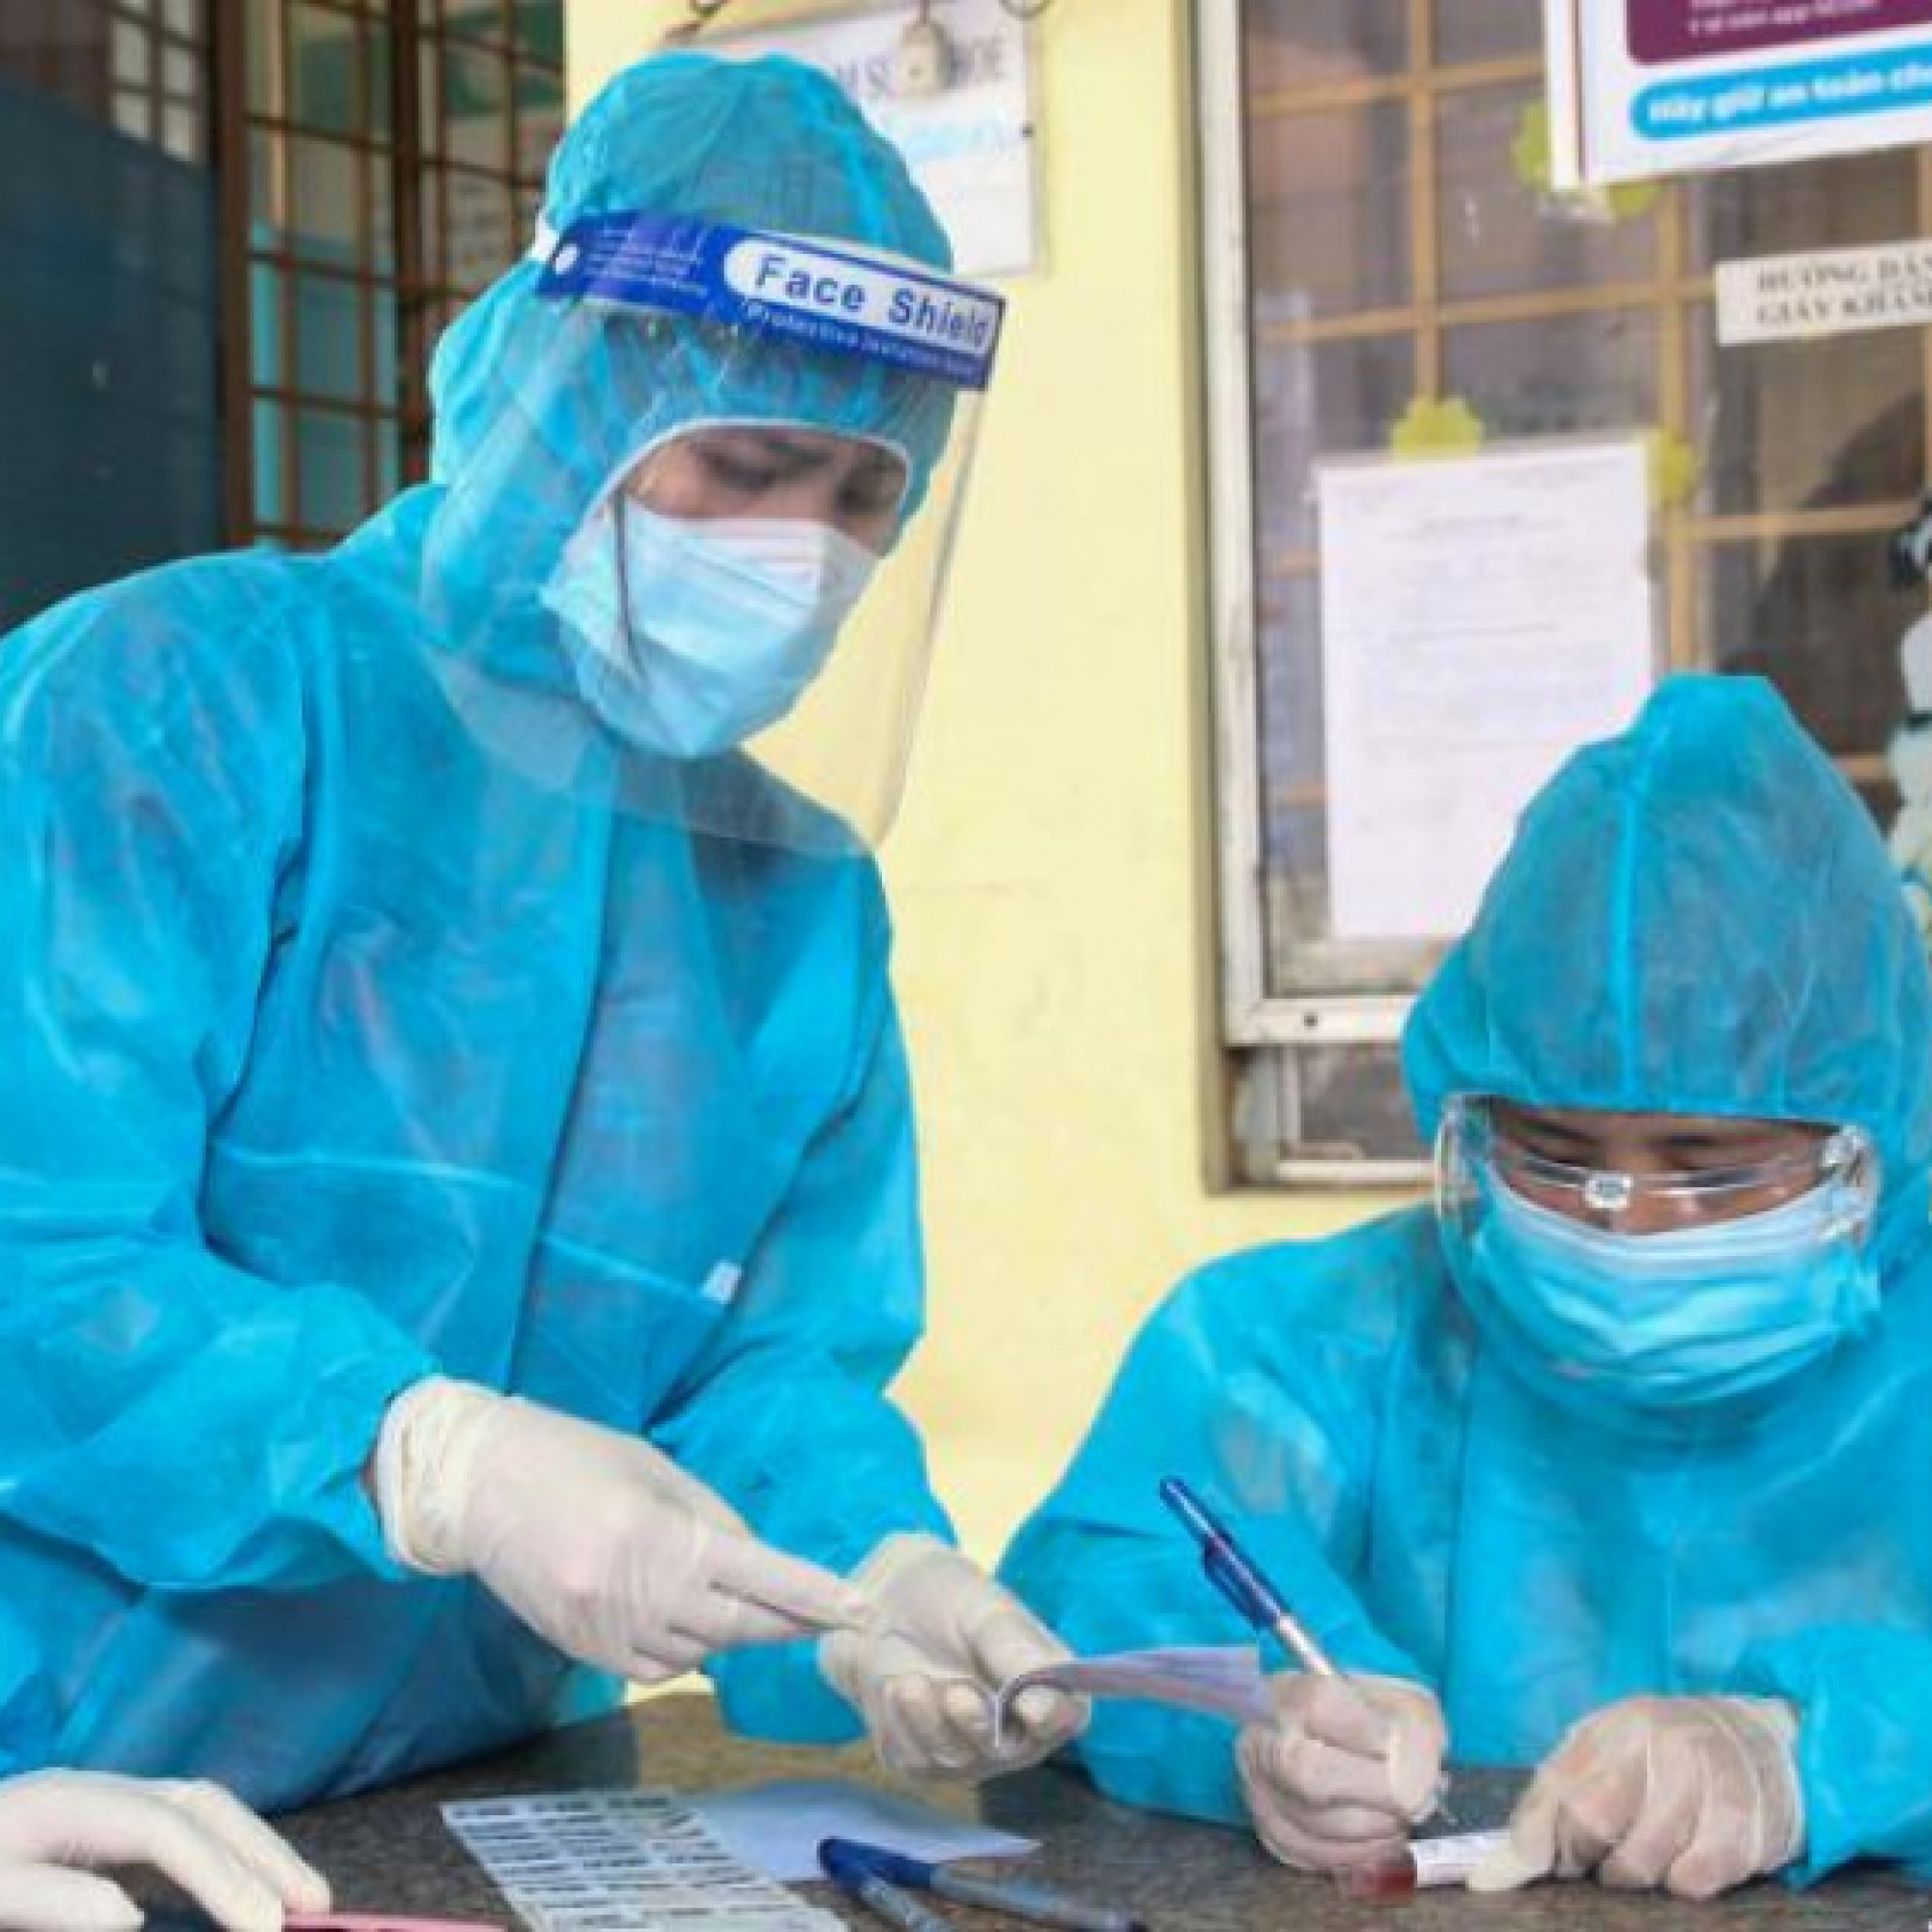  - Tình hình dịch COVID-19 tại Hà Nội trong 7 ngày qua (10-16/1)